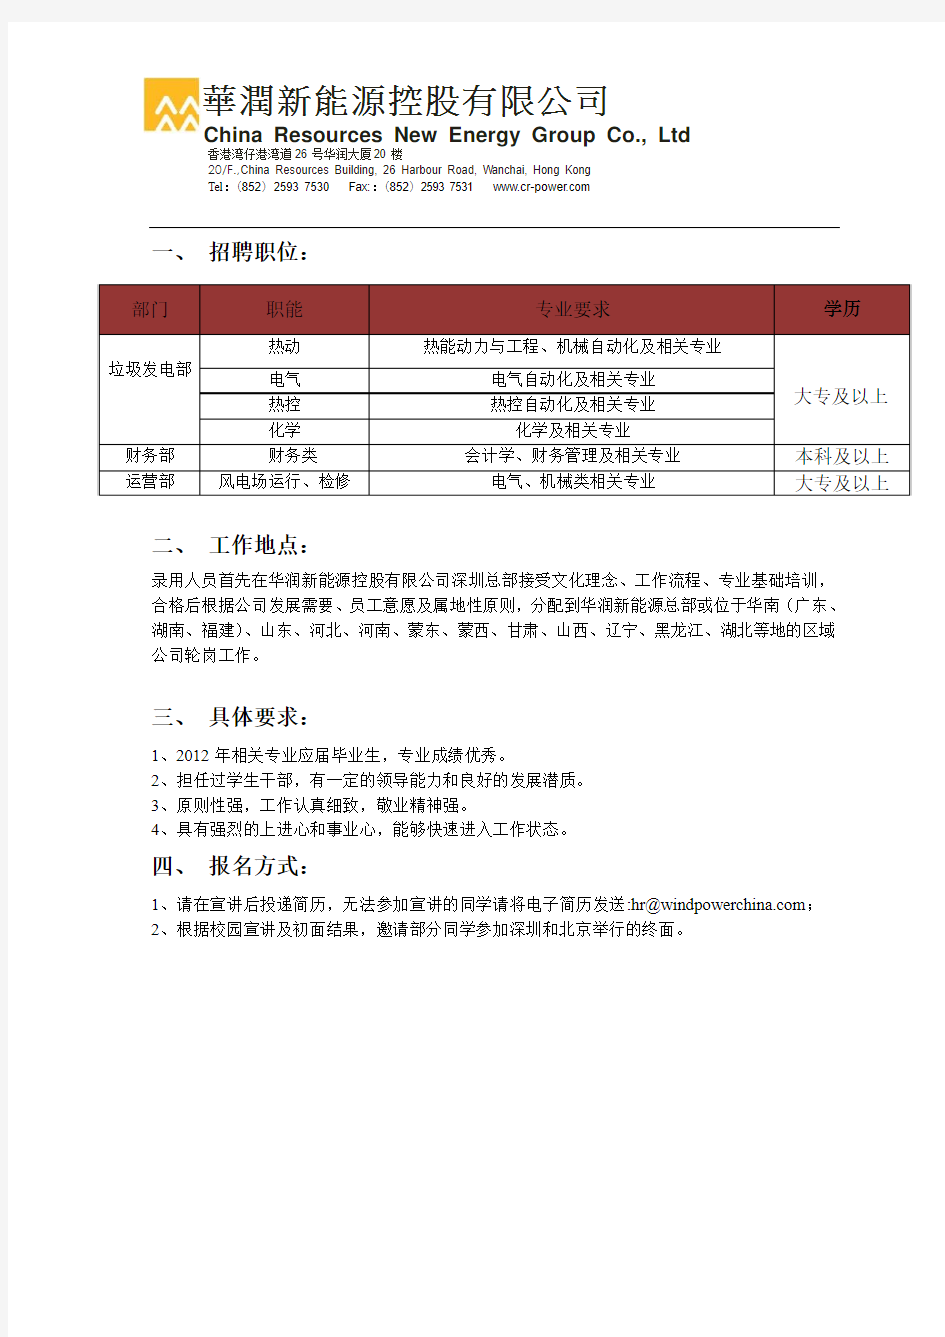 2011928 154141华润新能源控股有限公司2012年招聘简章